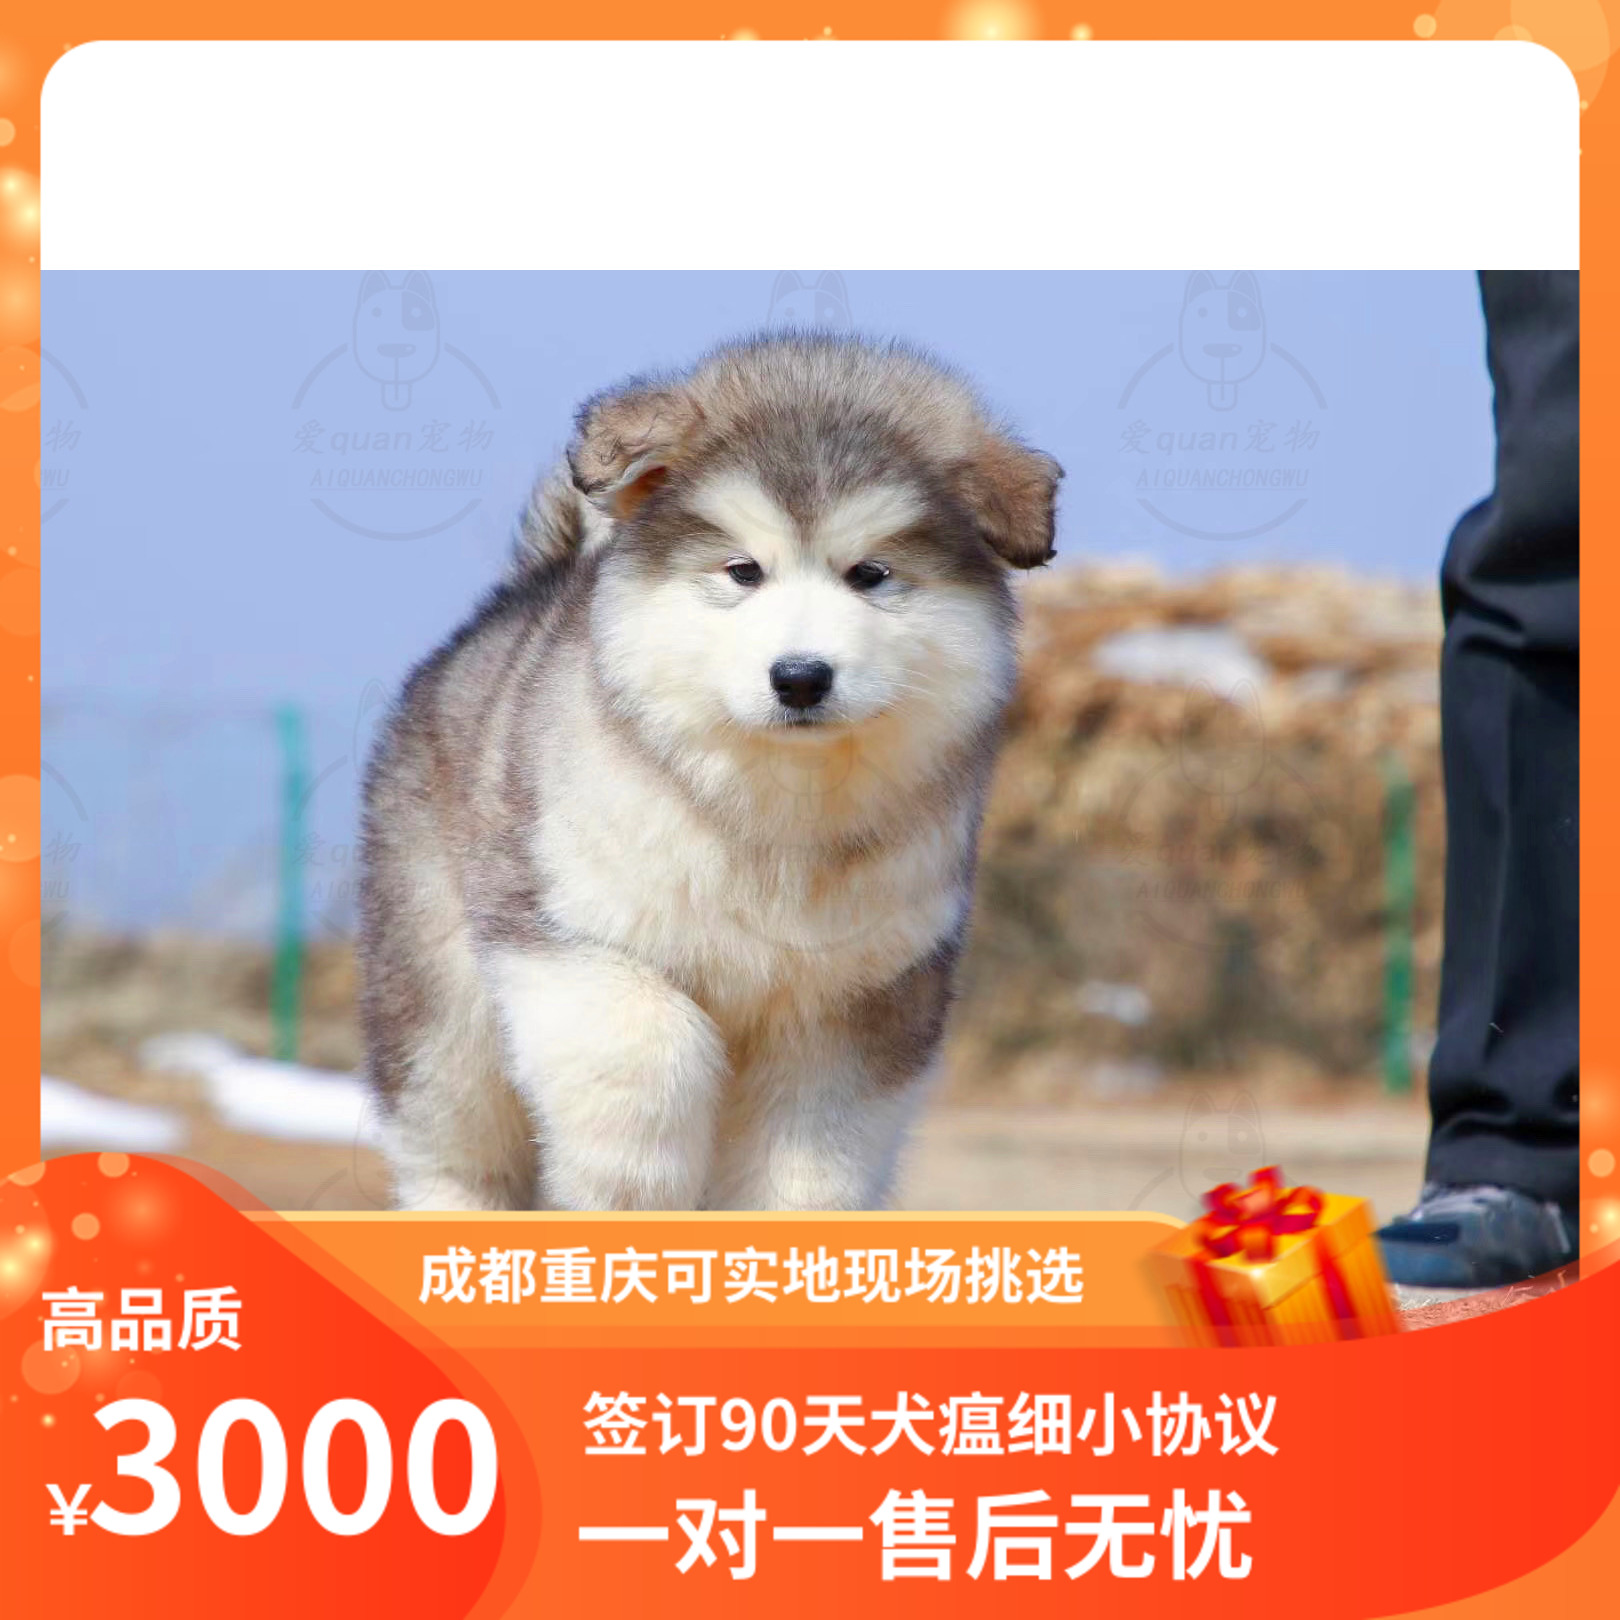 重庆熊版烟灰色阿拉斯加幼犬活体宠物狗狗纯血统大型雪橇犬可自提